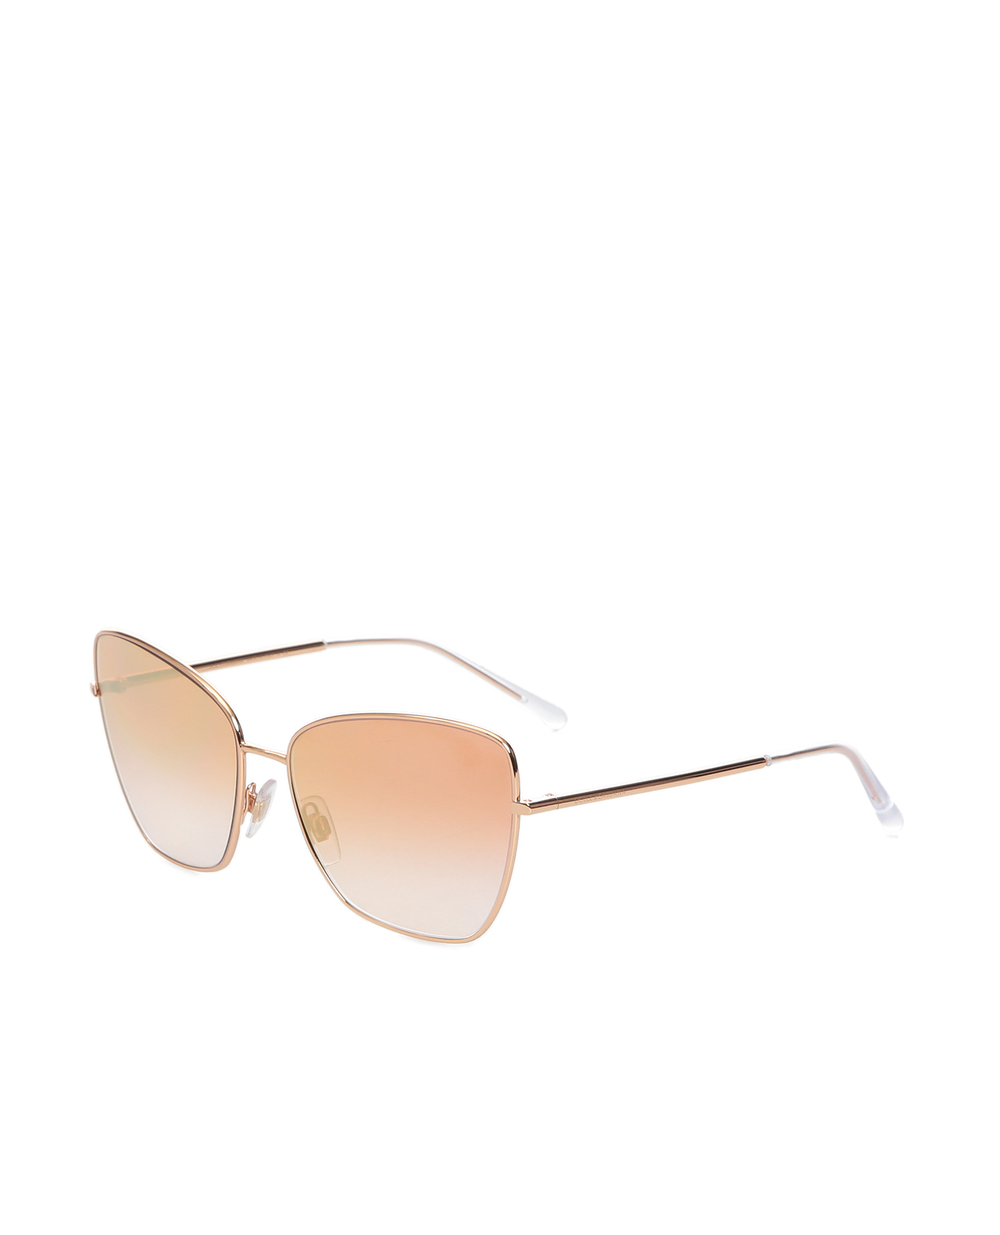 Солнцезащитные очки Dolce&Gabbana 220812986F62, золотой цвет • Купить в интернет-магазине Kameron